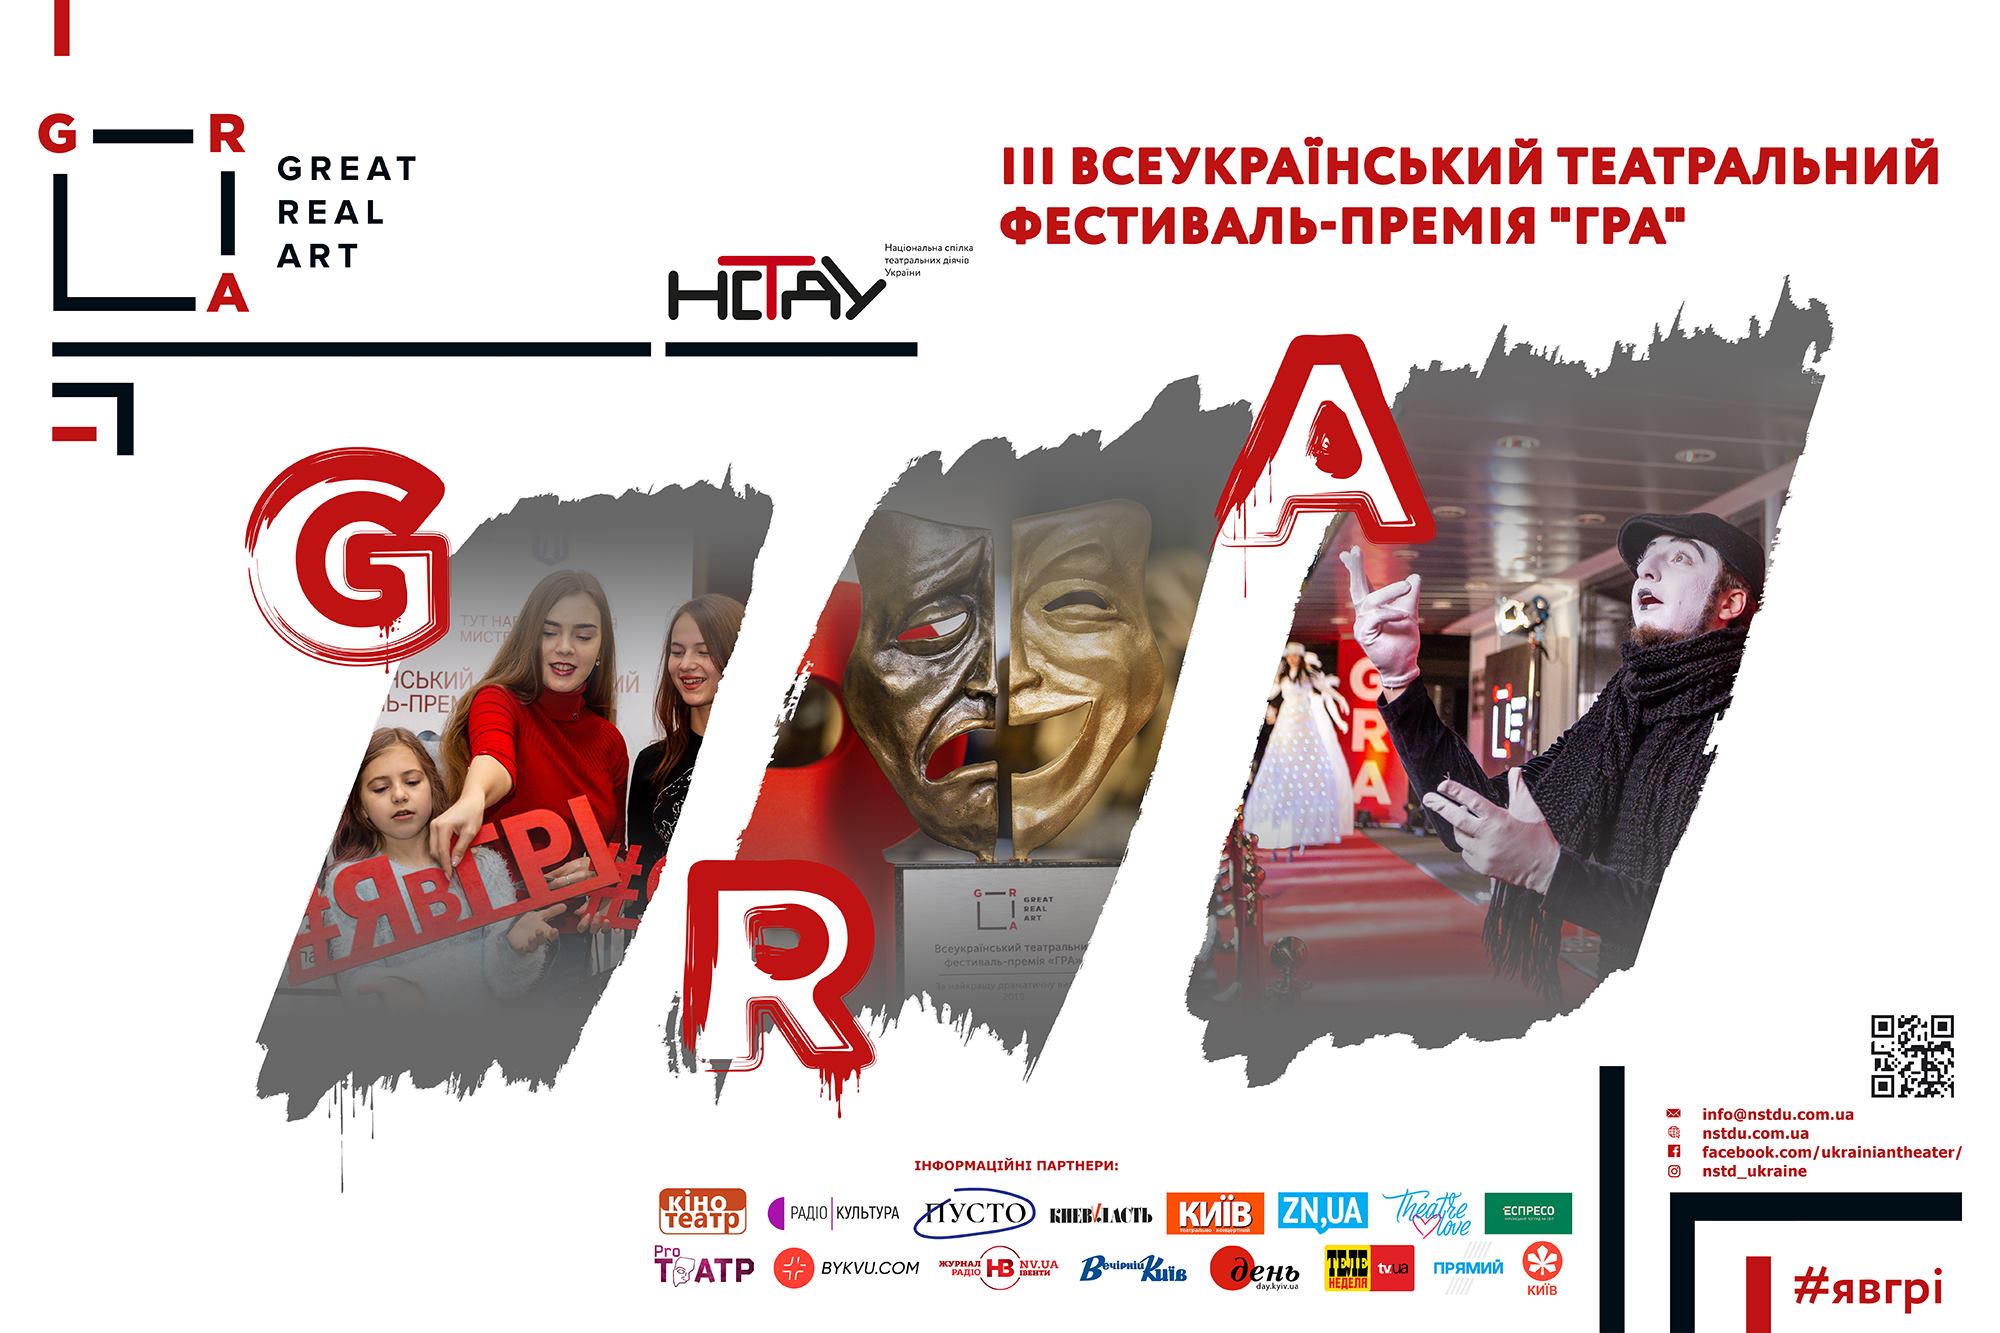 В Киеве состоится награждение победителей фестиваля-премии “ГРА”